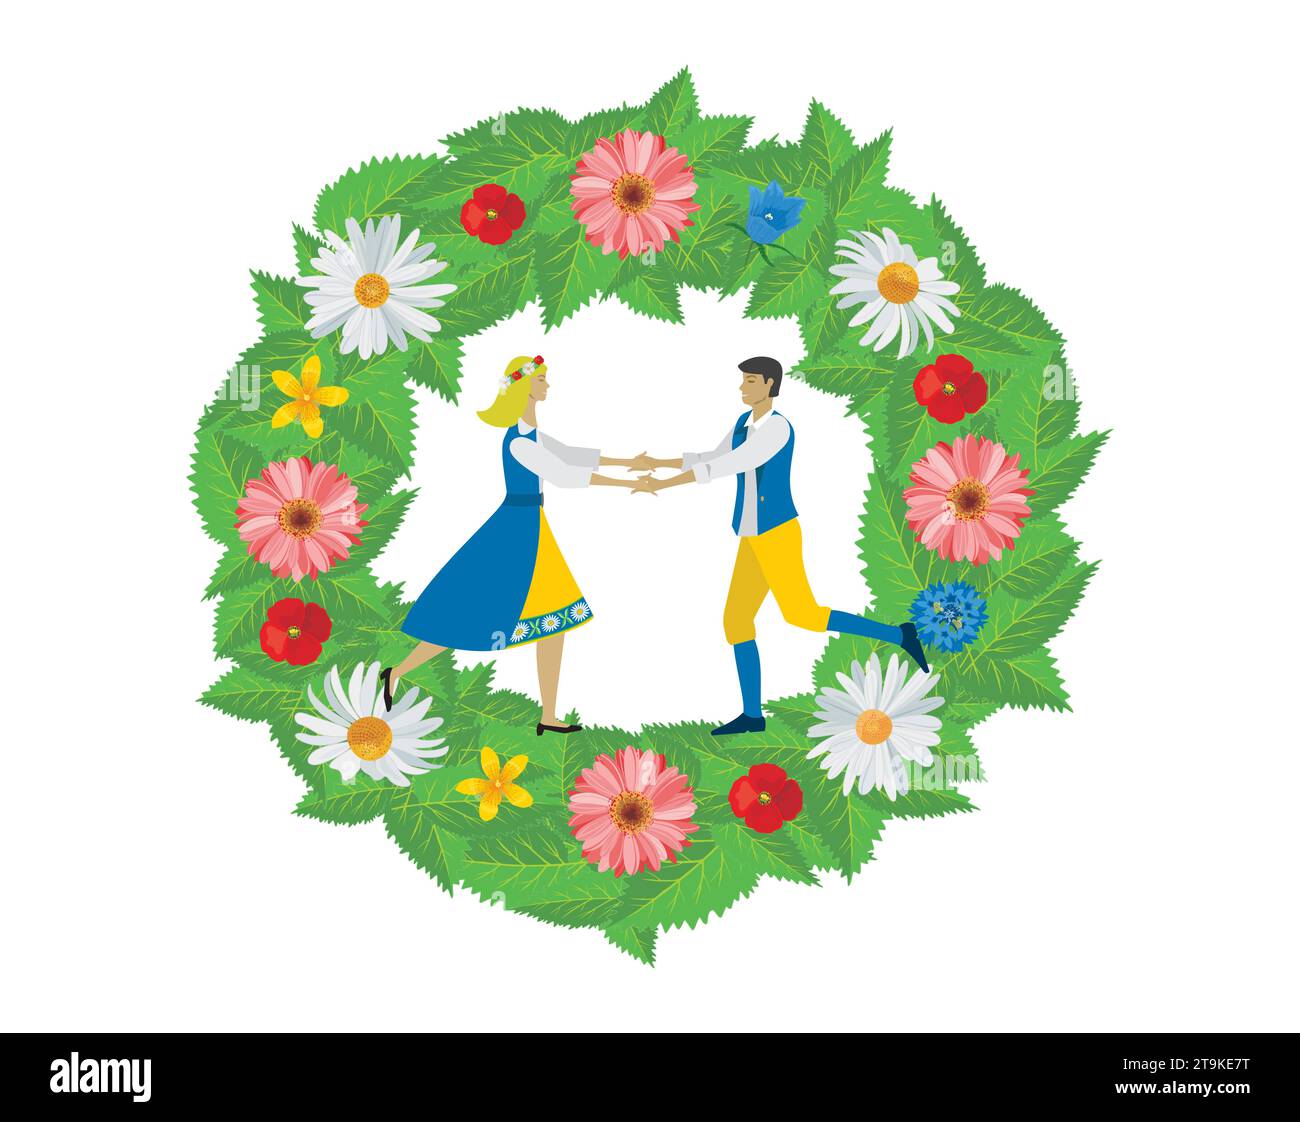 Mann und Frau in traditioneller schwedischer Kleidung tanzen in einem Blumenkranz. Isoliert. Vektorabbildung. Stock Vektor